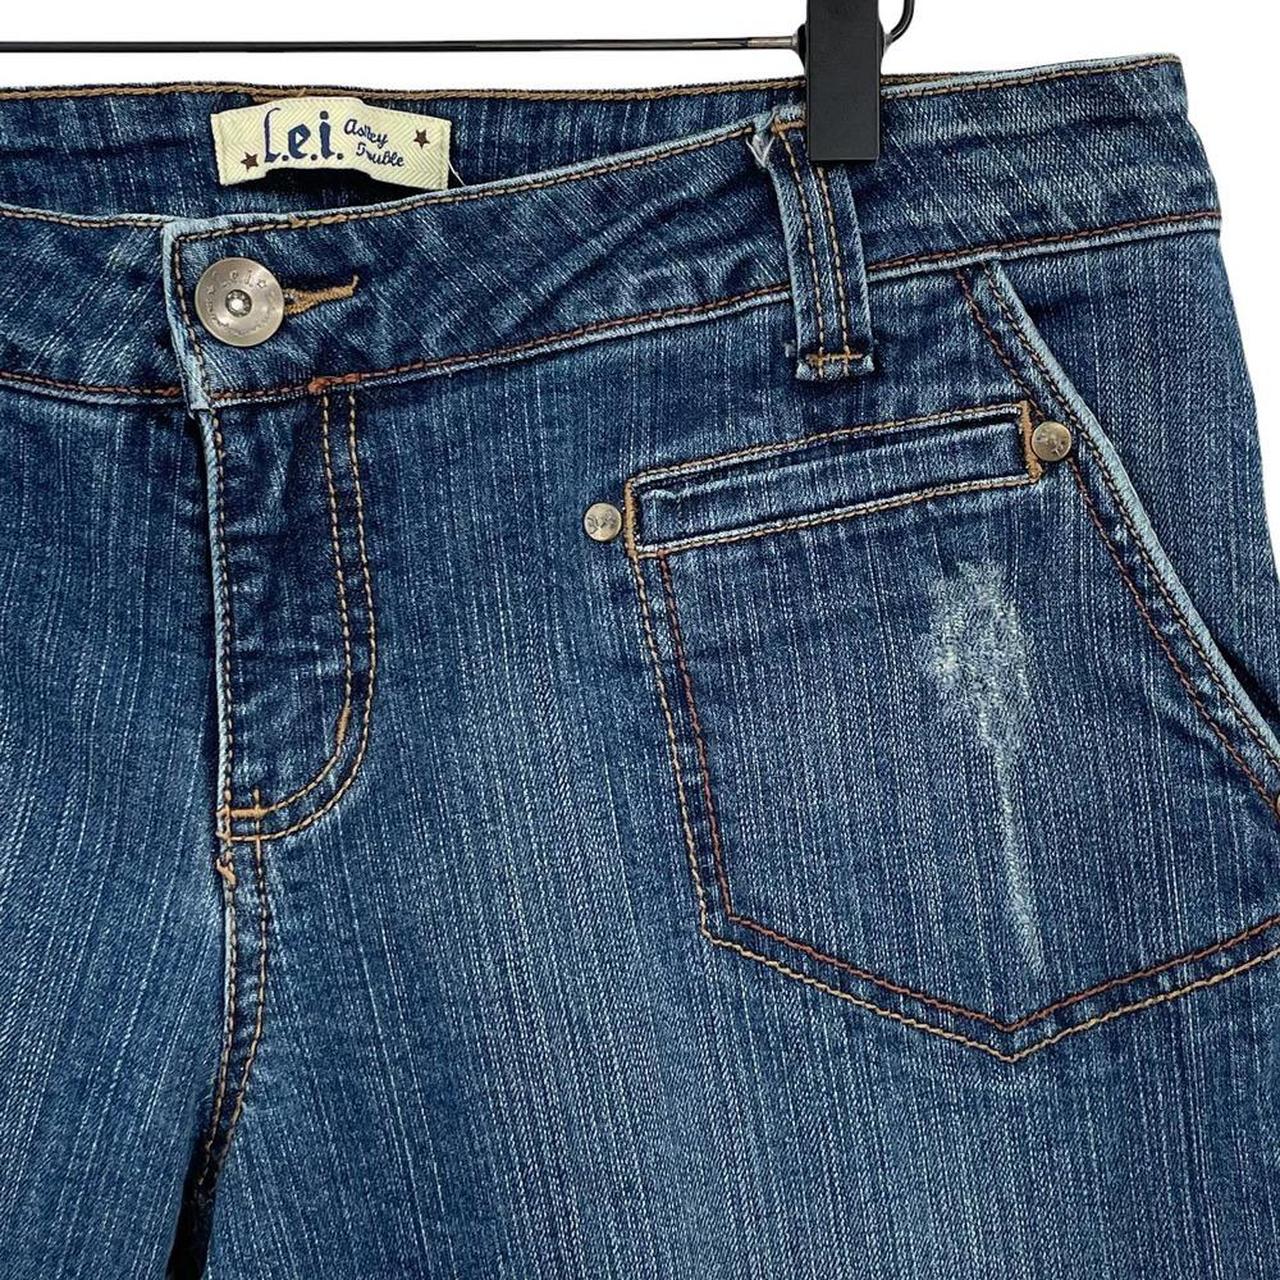 Vintage Y2K l.e.i. low rise flare jeans in dark wash... - Depop